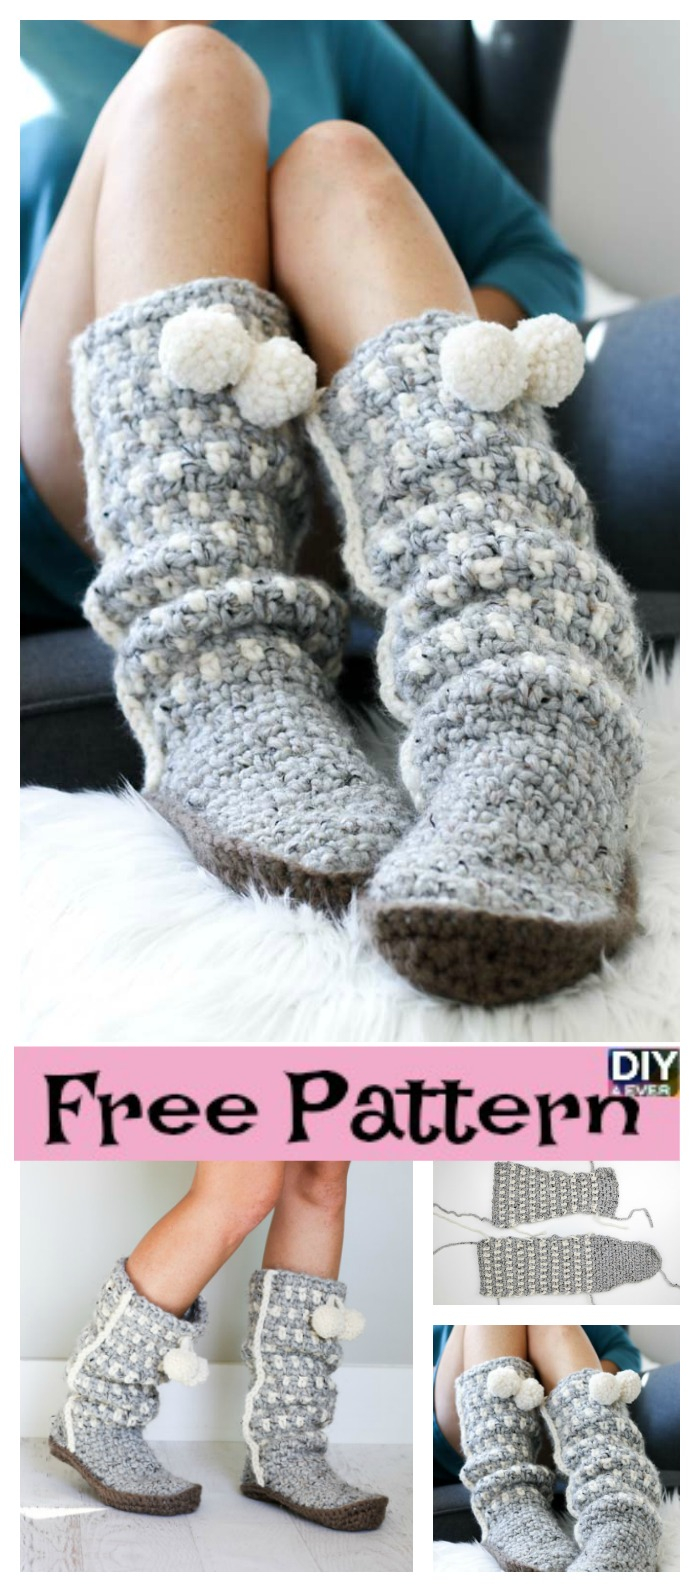 Crochet Slipper Boots Free Pattern Easy Stylish Crochet Slippers Free Pattern Diy 4 Ever